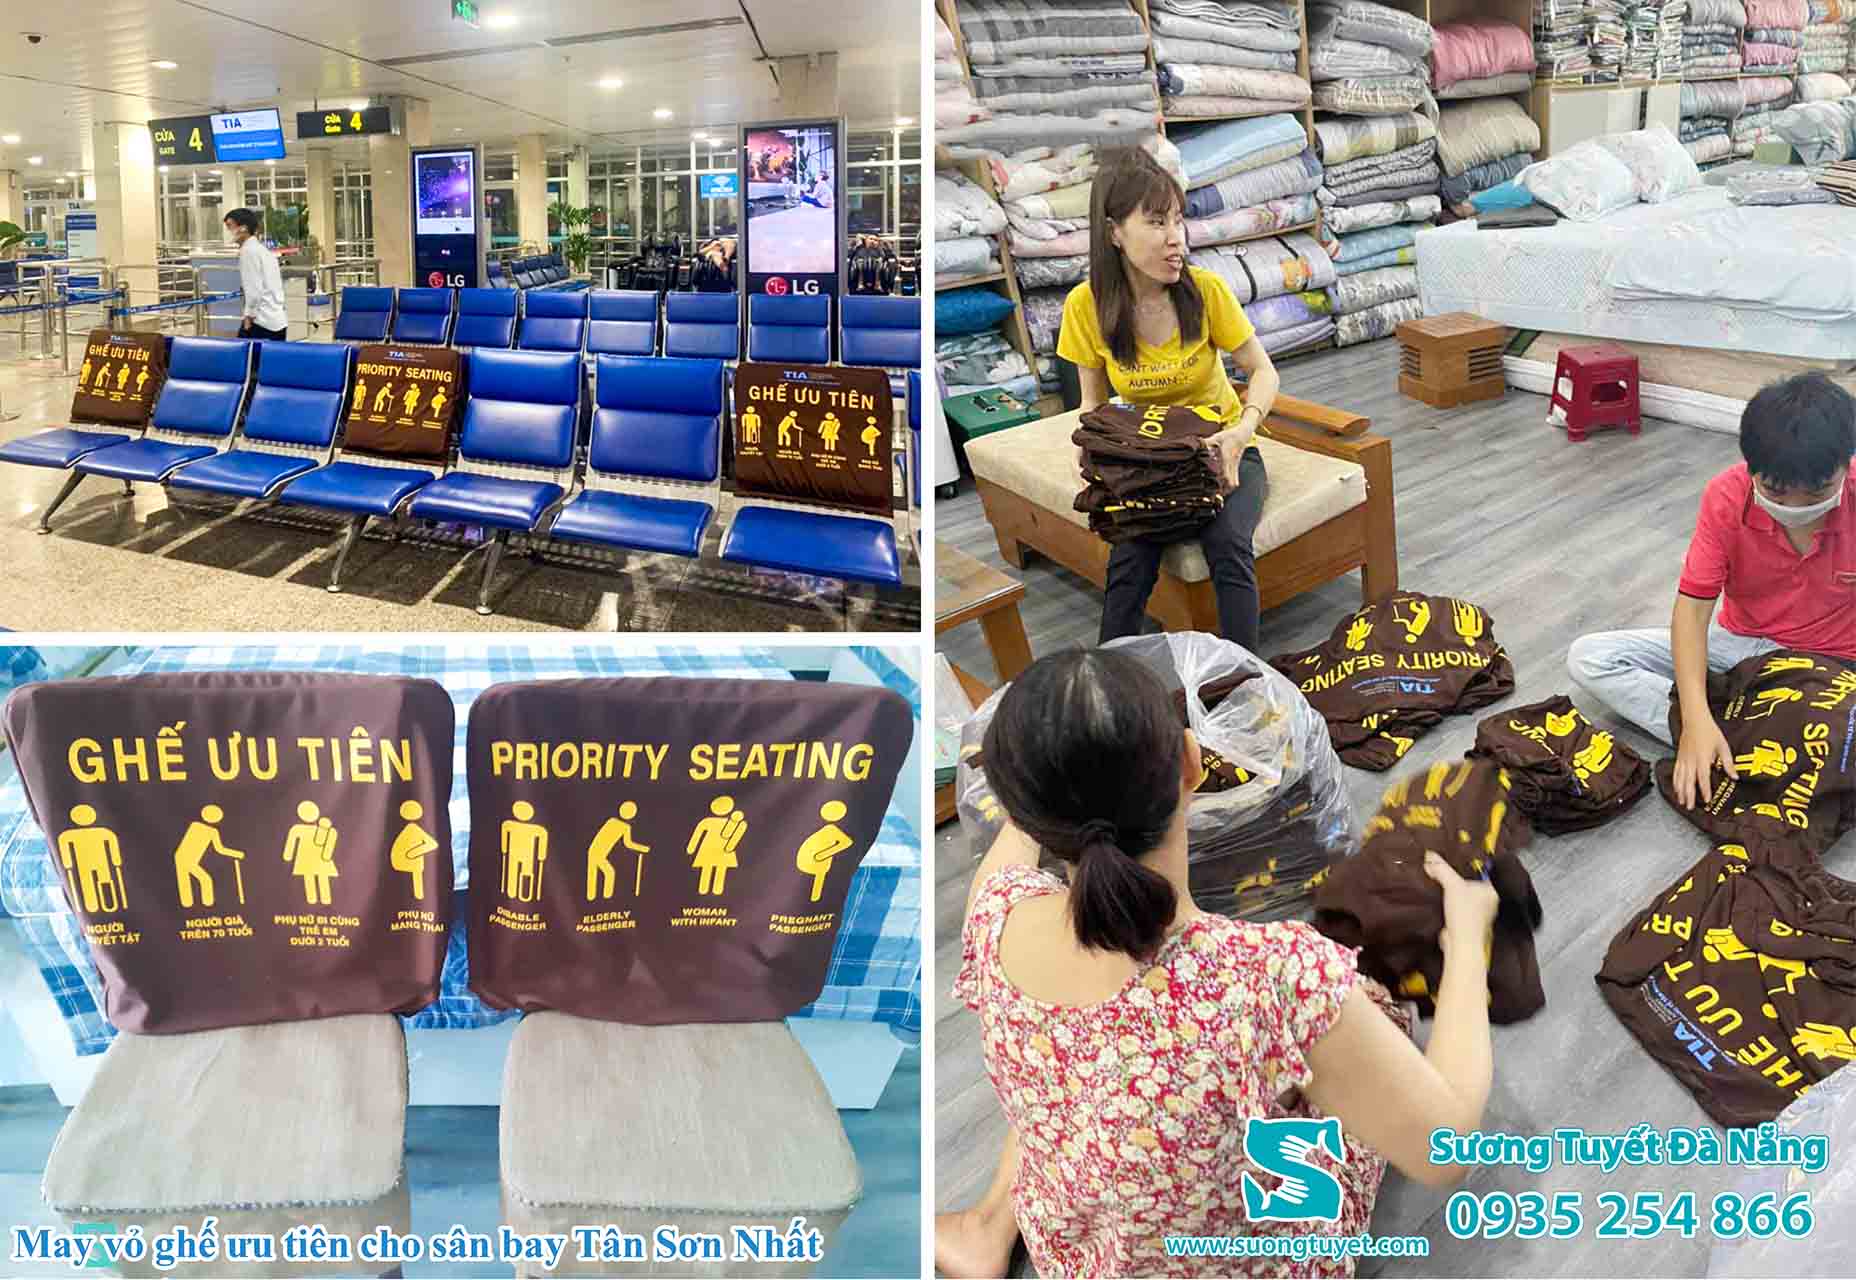 Nệm lót ghế phòng chờ sân bay Tân Sơn Nhất tạo điểm nhấn và hiệu quả cao.